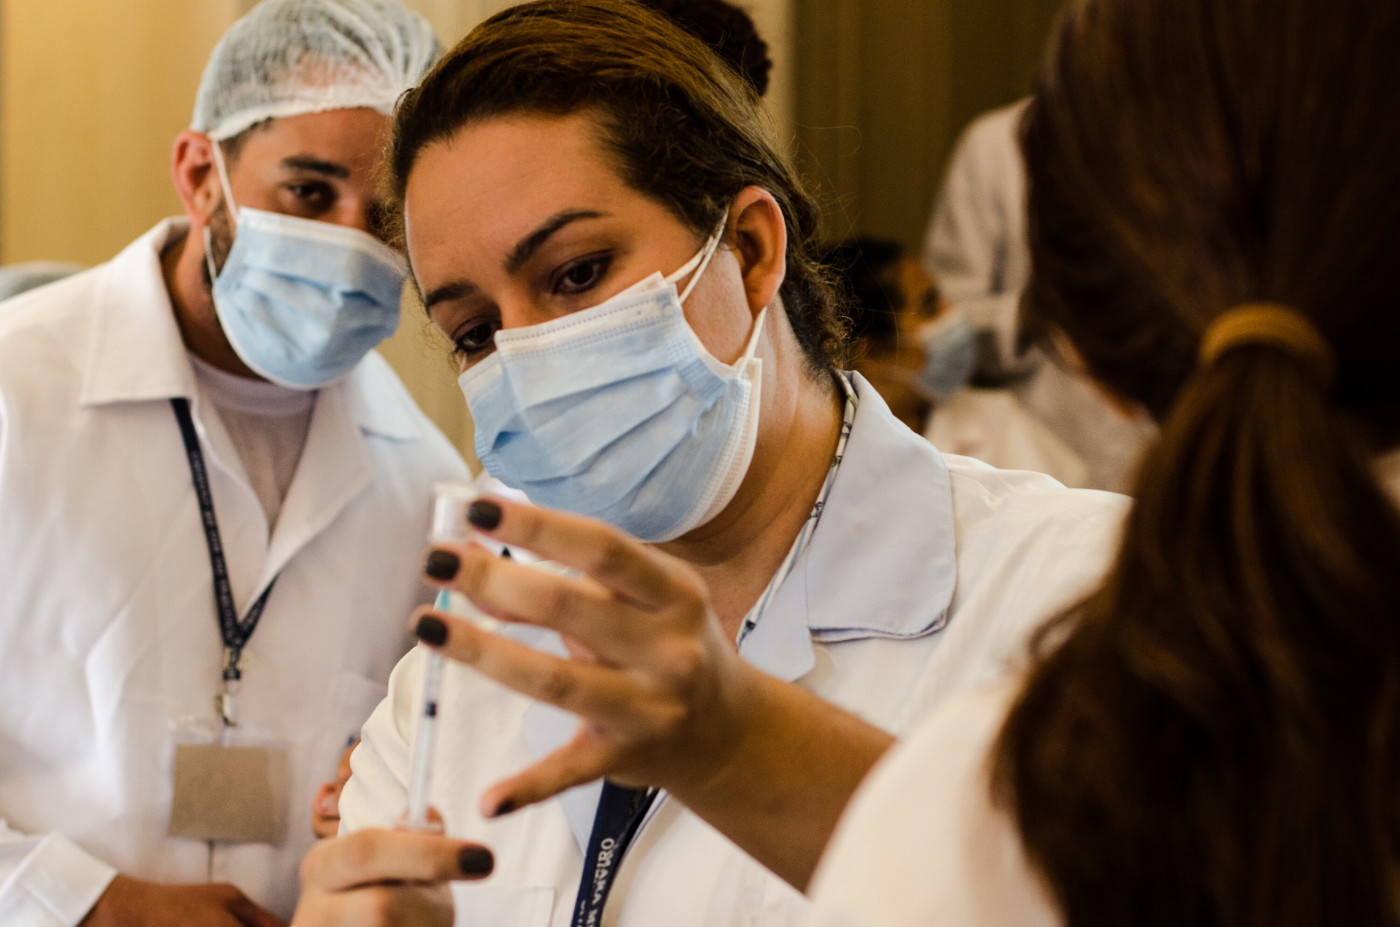 Profissional da saúde preparando dose de vacina contra a Covid-19 no Palácio Pedro Ernesto, sede da Câmara Municipal do Rio de Janeiro